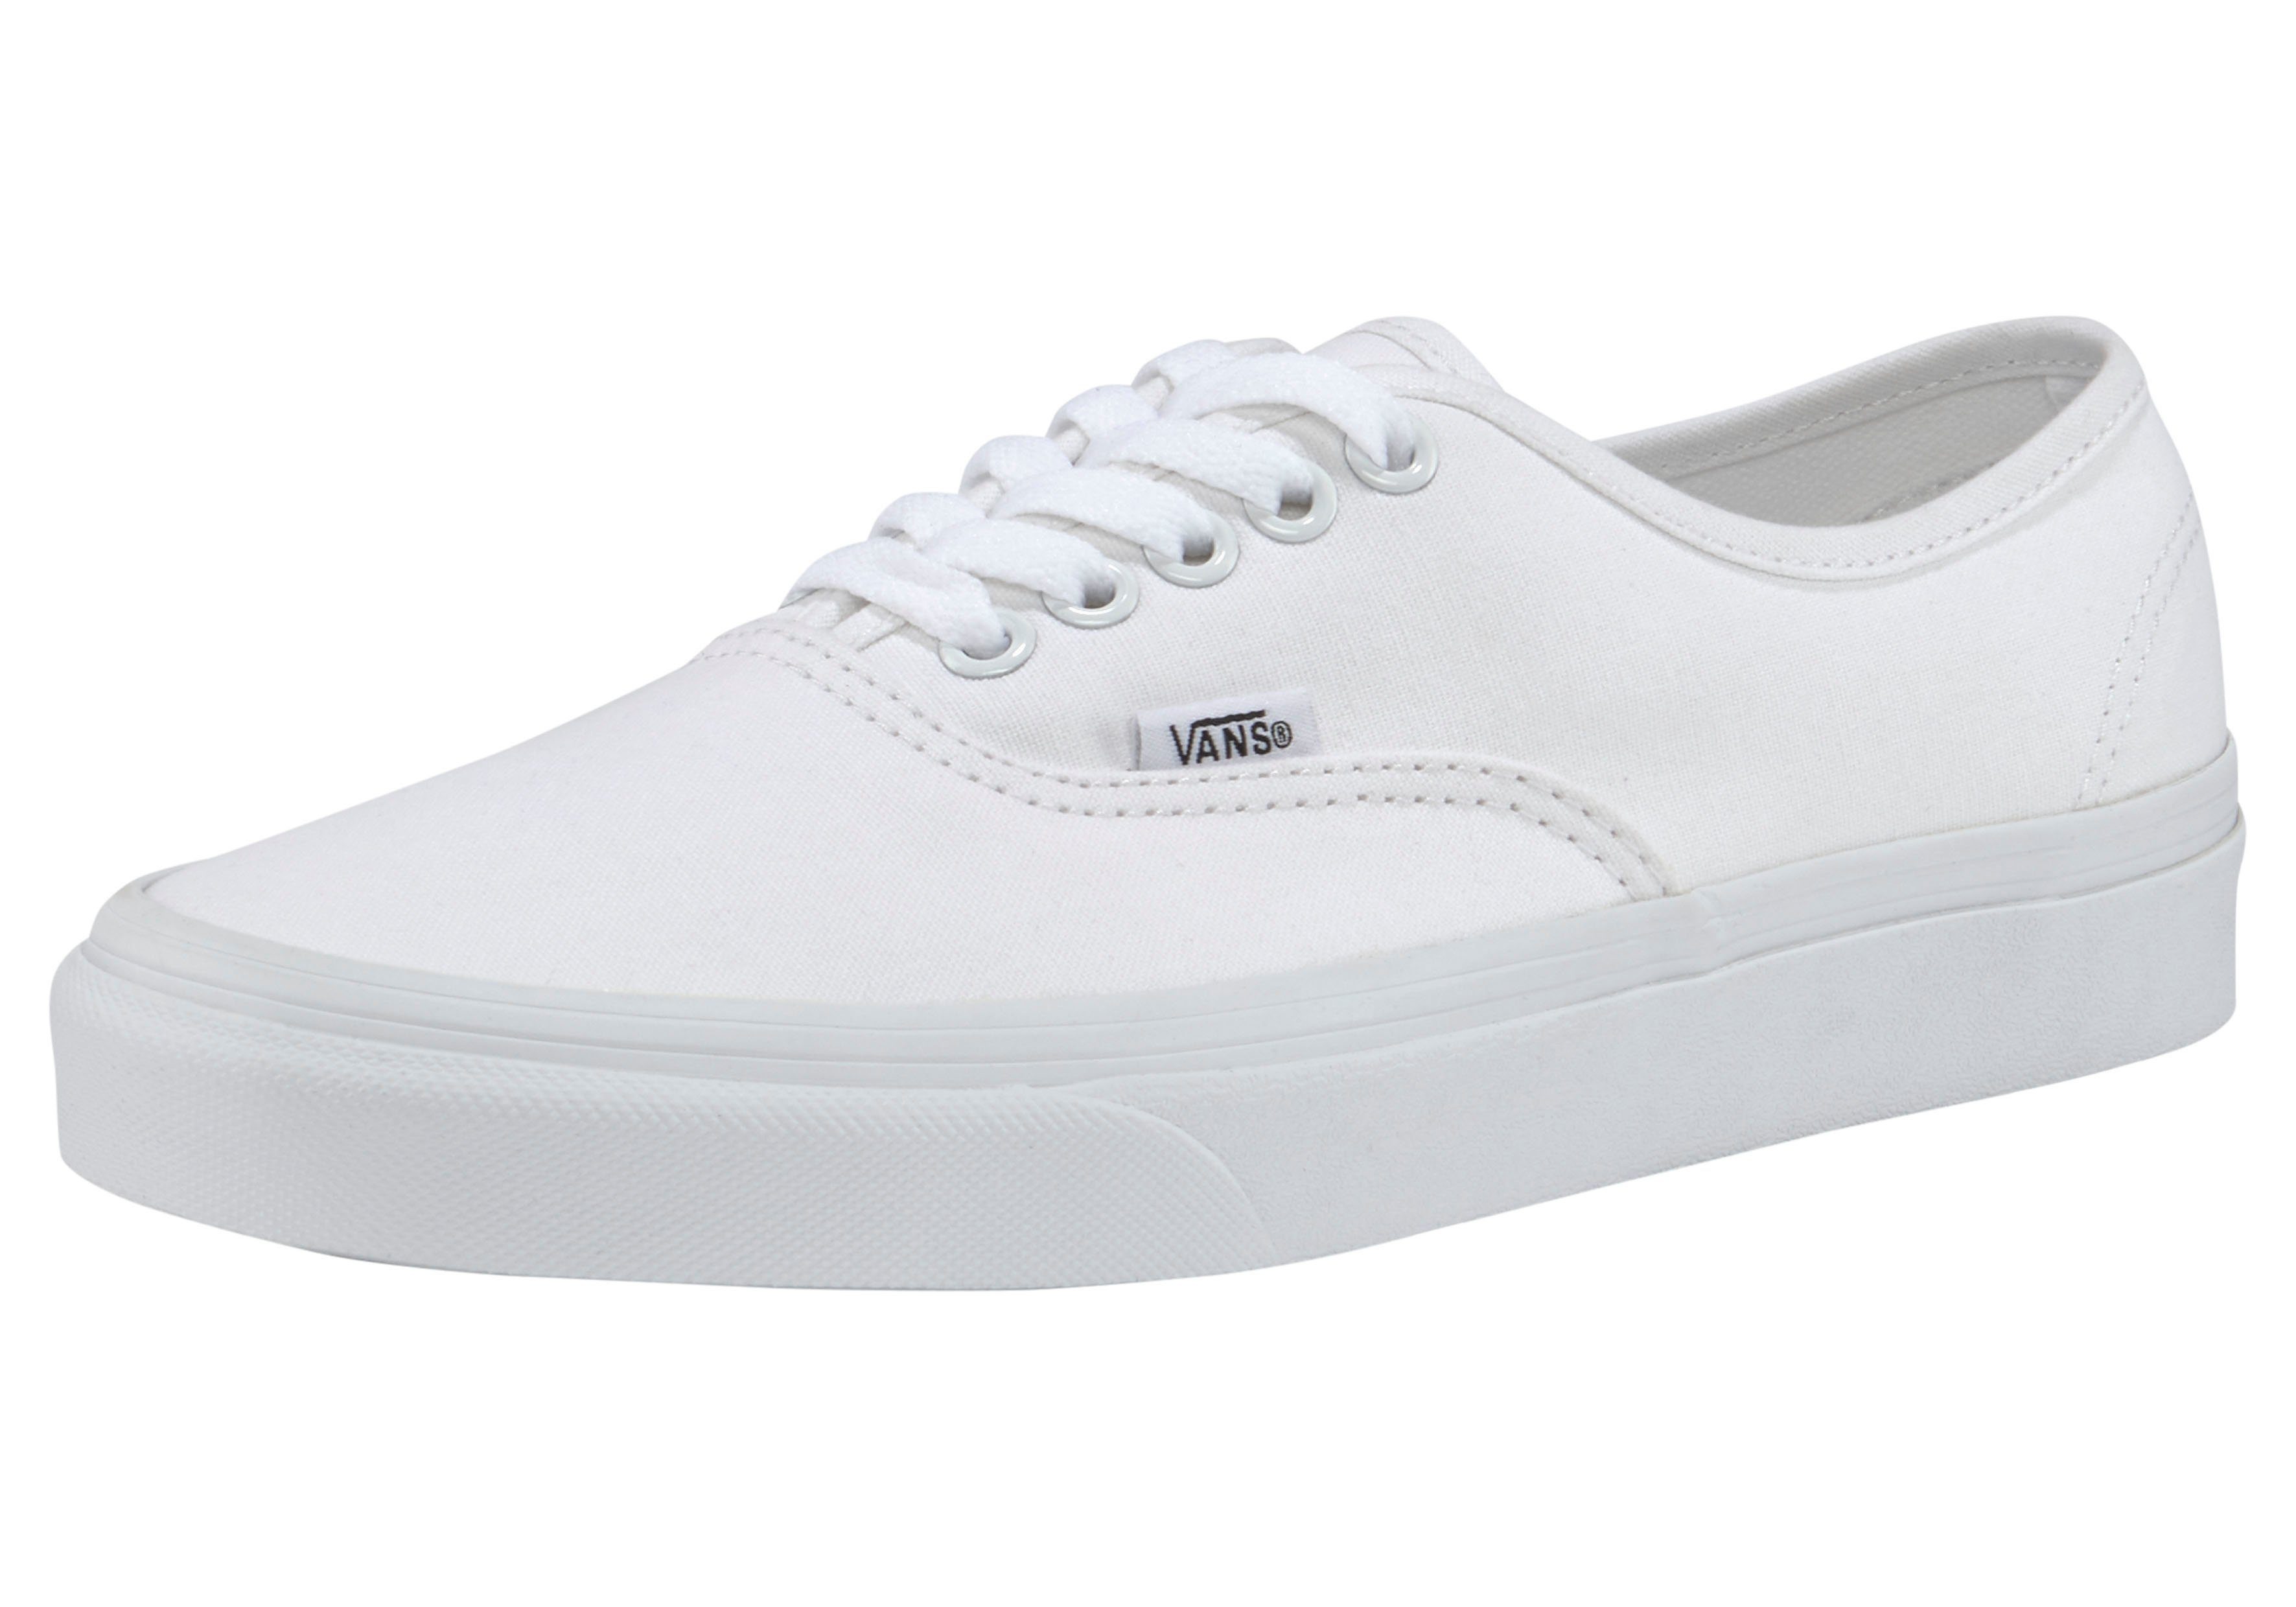 Weiße Vans Schuhe online kaufen | OTTO